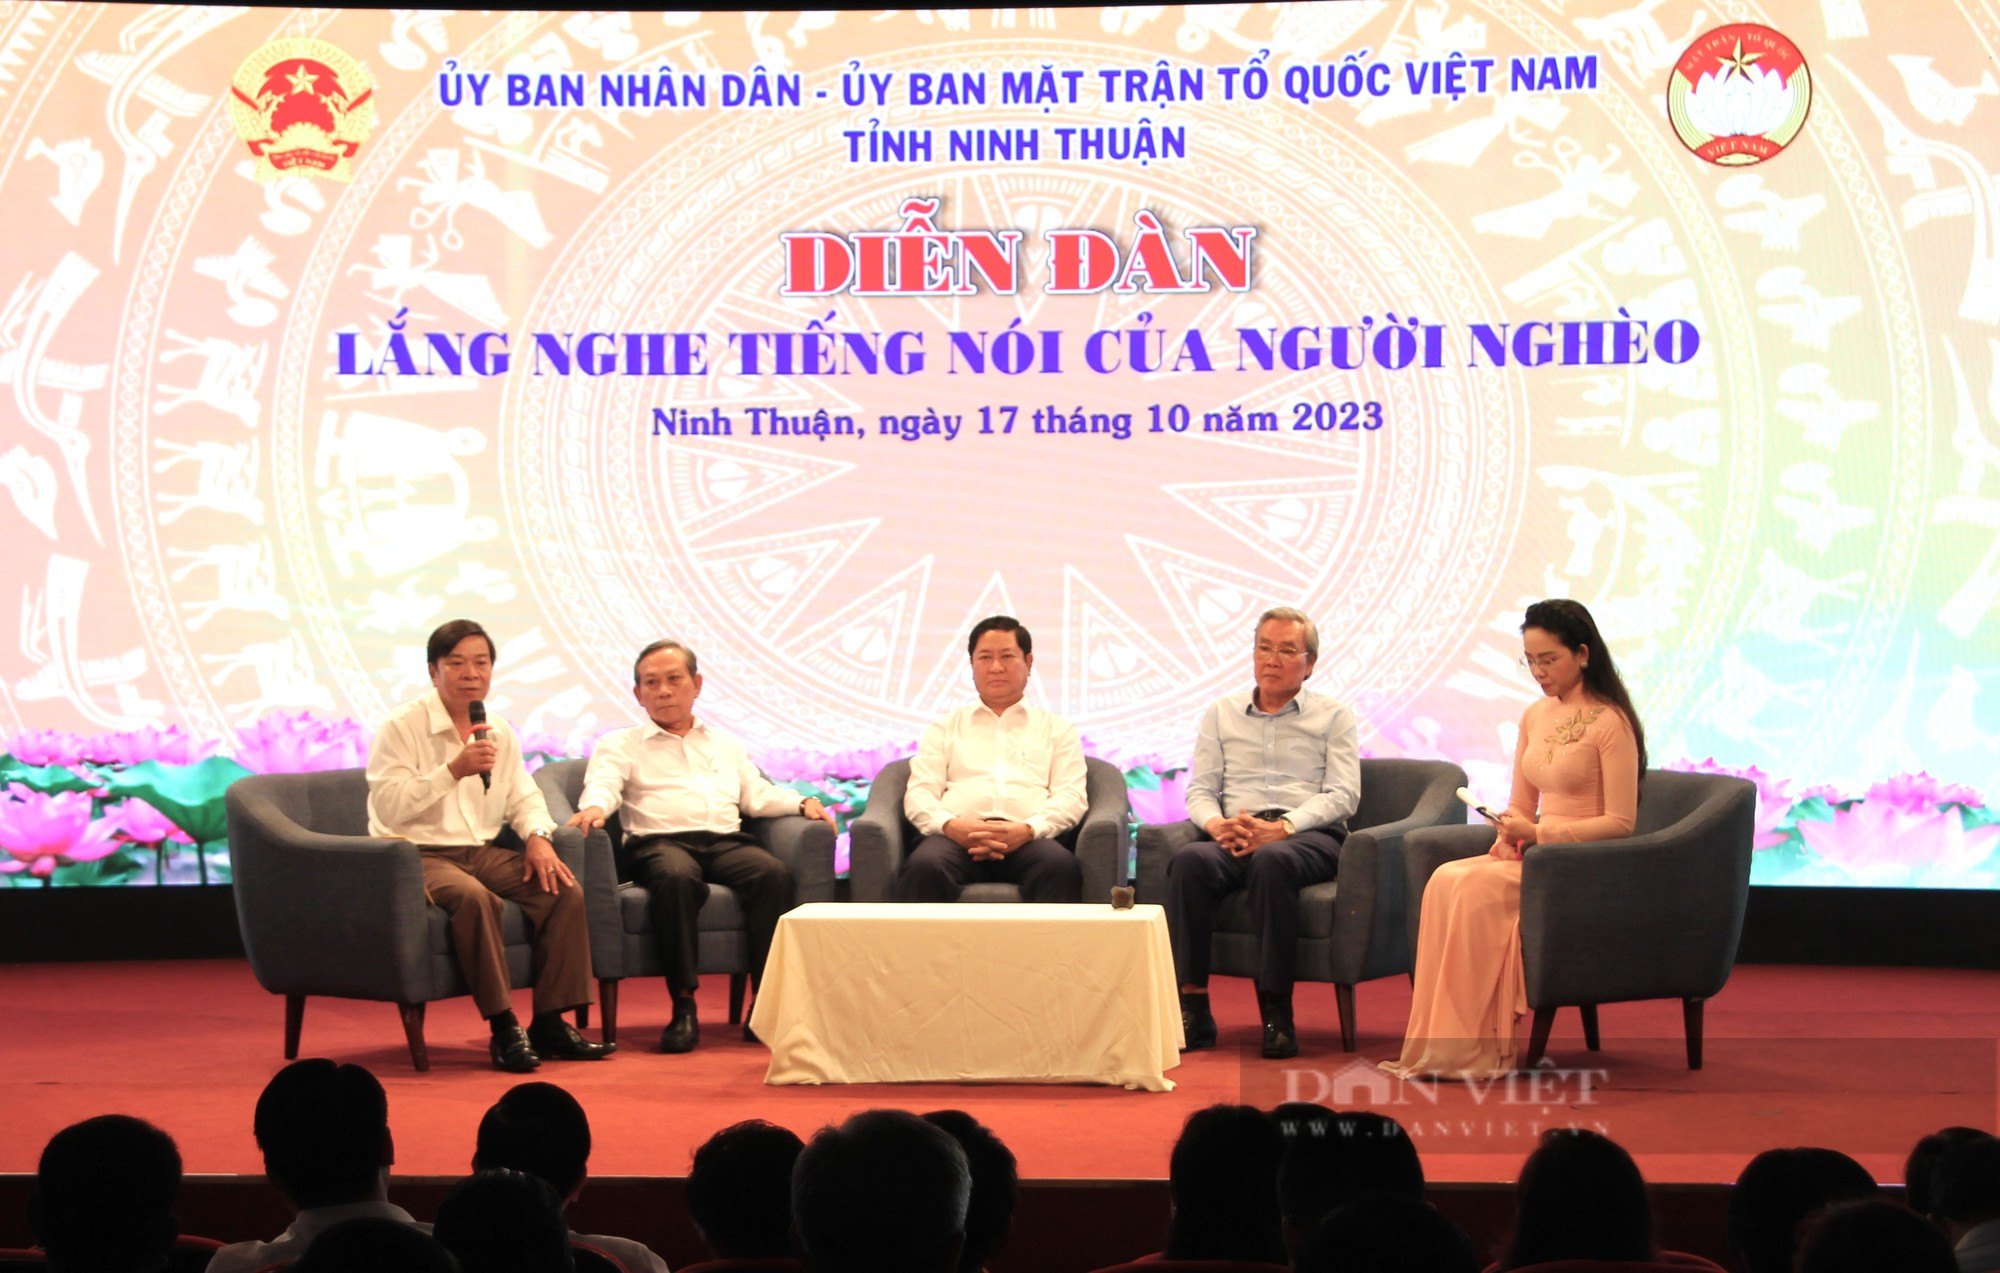 Diễn đàn “Lắng nghe tiếng nói của người nghèo” ở Ninh Thuận - Ảnh 1.